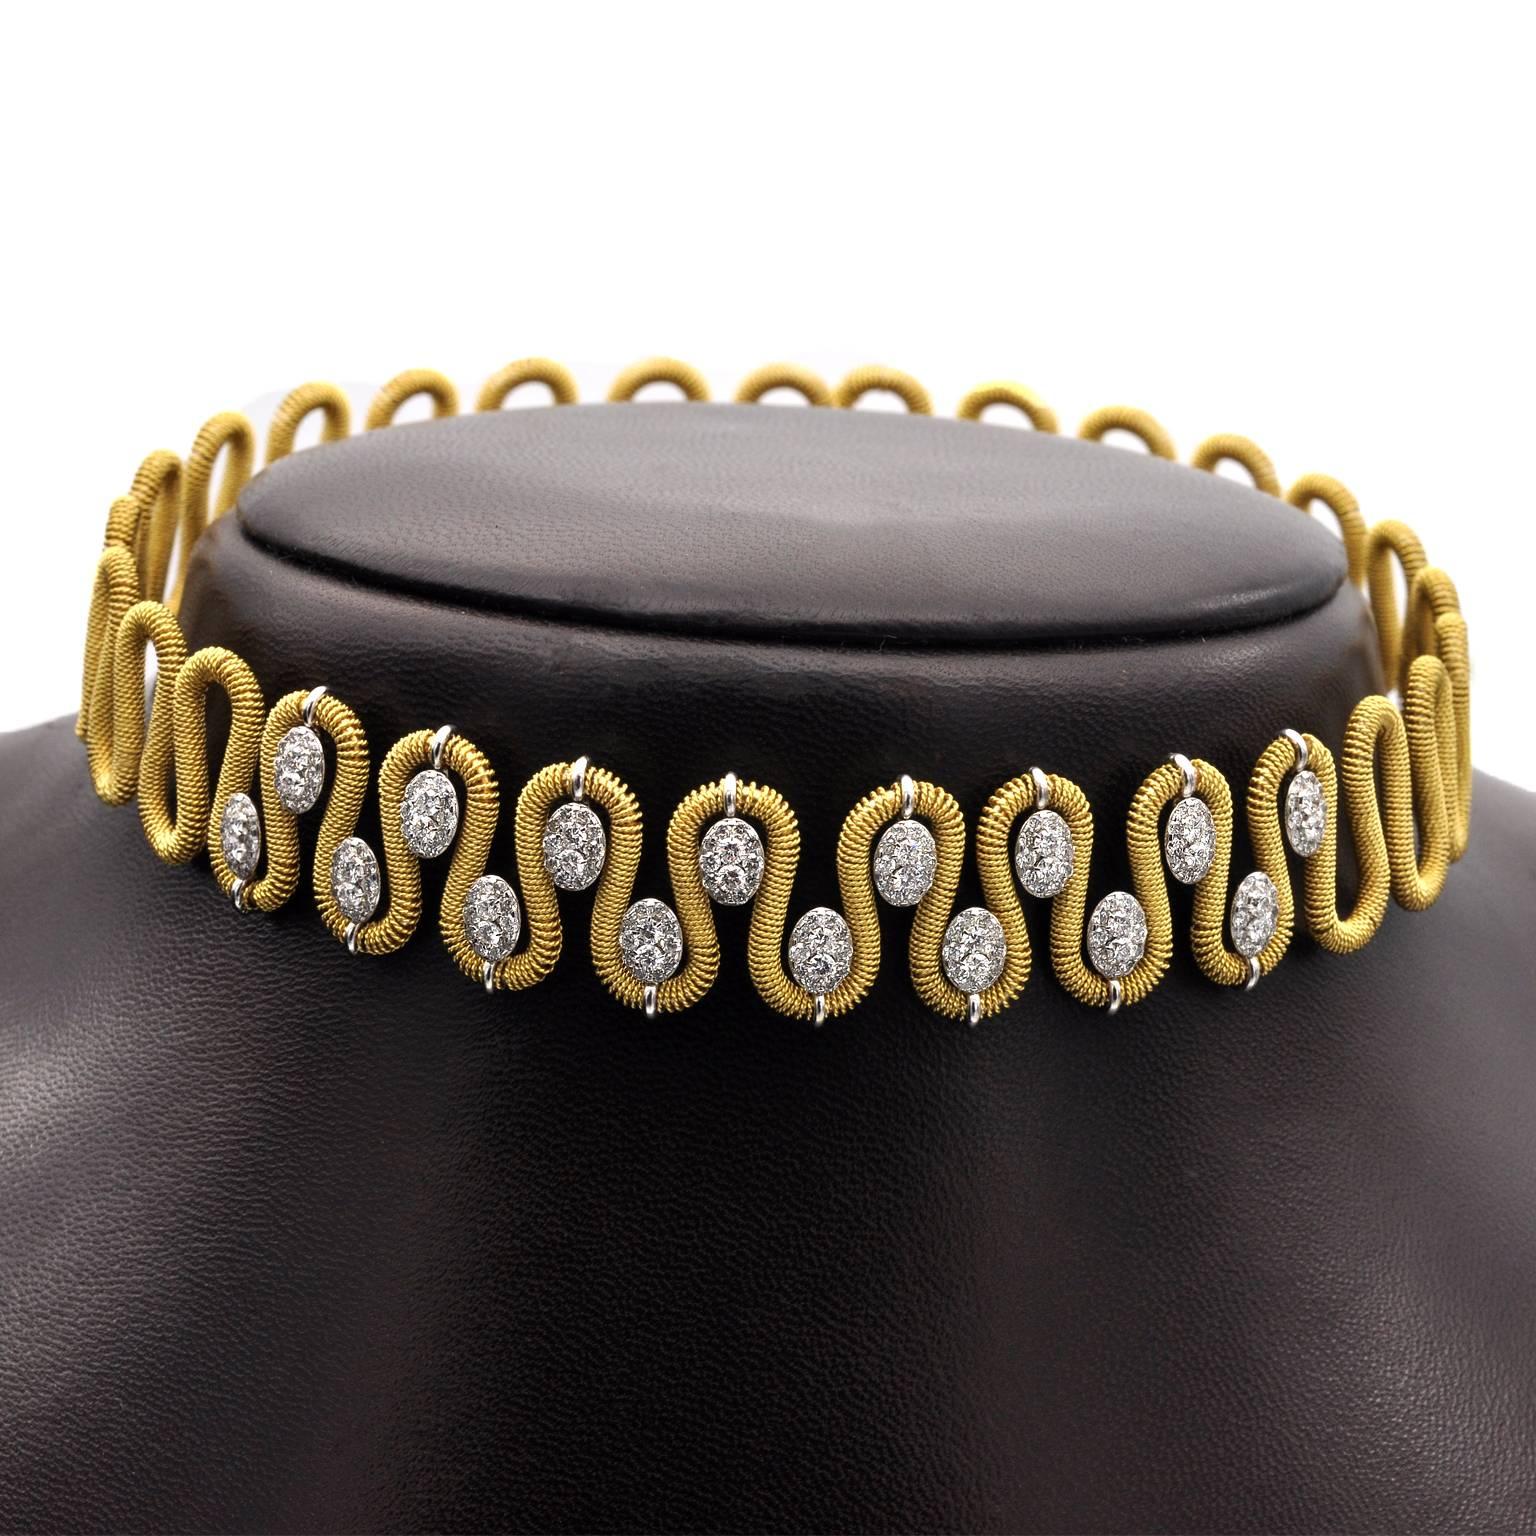 Exquisites Halsband aus 18 Kt Gold, vollständig handgefertigt von Marchisio italienische Juweliere seit 1859. Die Halskette lässt sich um den Hals falten und passt allen Größen. 
Diamanten: 3,2 Karat 
Gold : 34gr

Passendes Armband Ref: